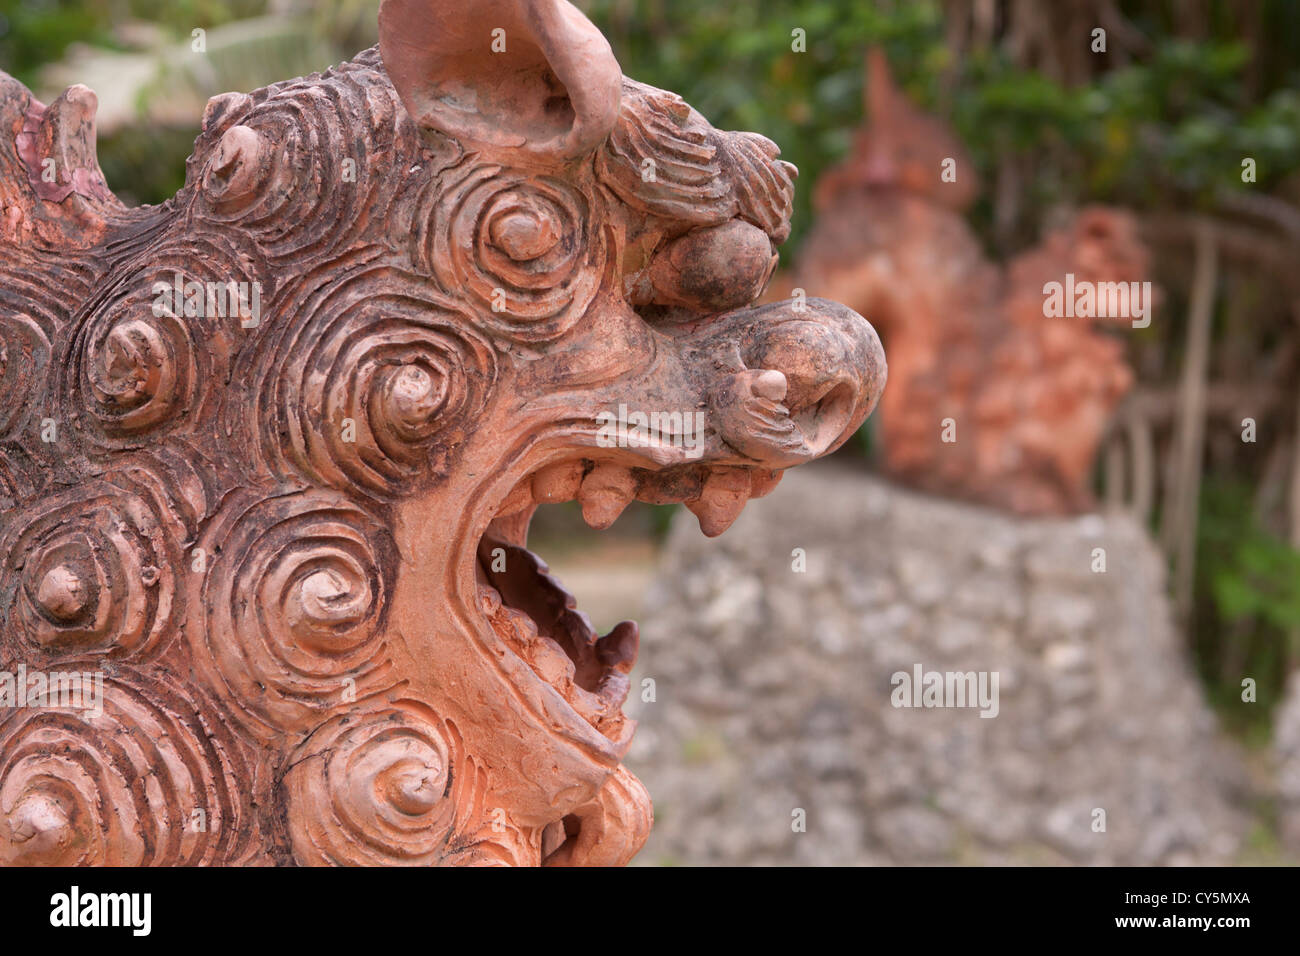 León de piedra de dioses, conocido localmente como Shiisa, son comunes las adiciones a las casas en Okinawa, Japón Foto de stock